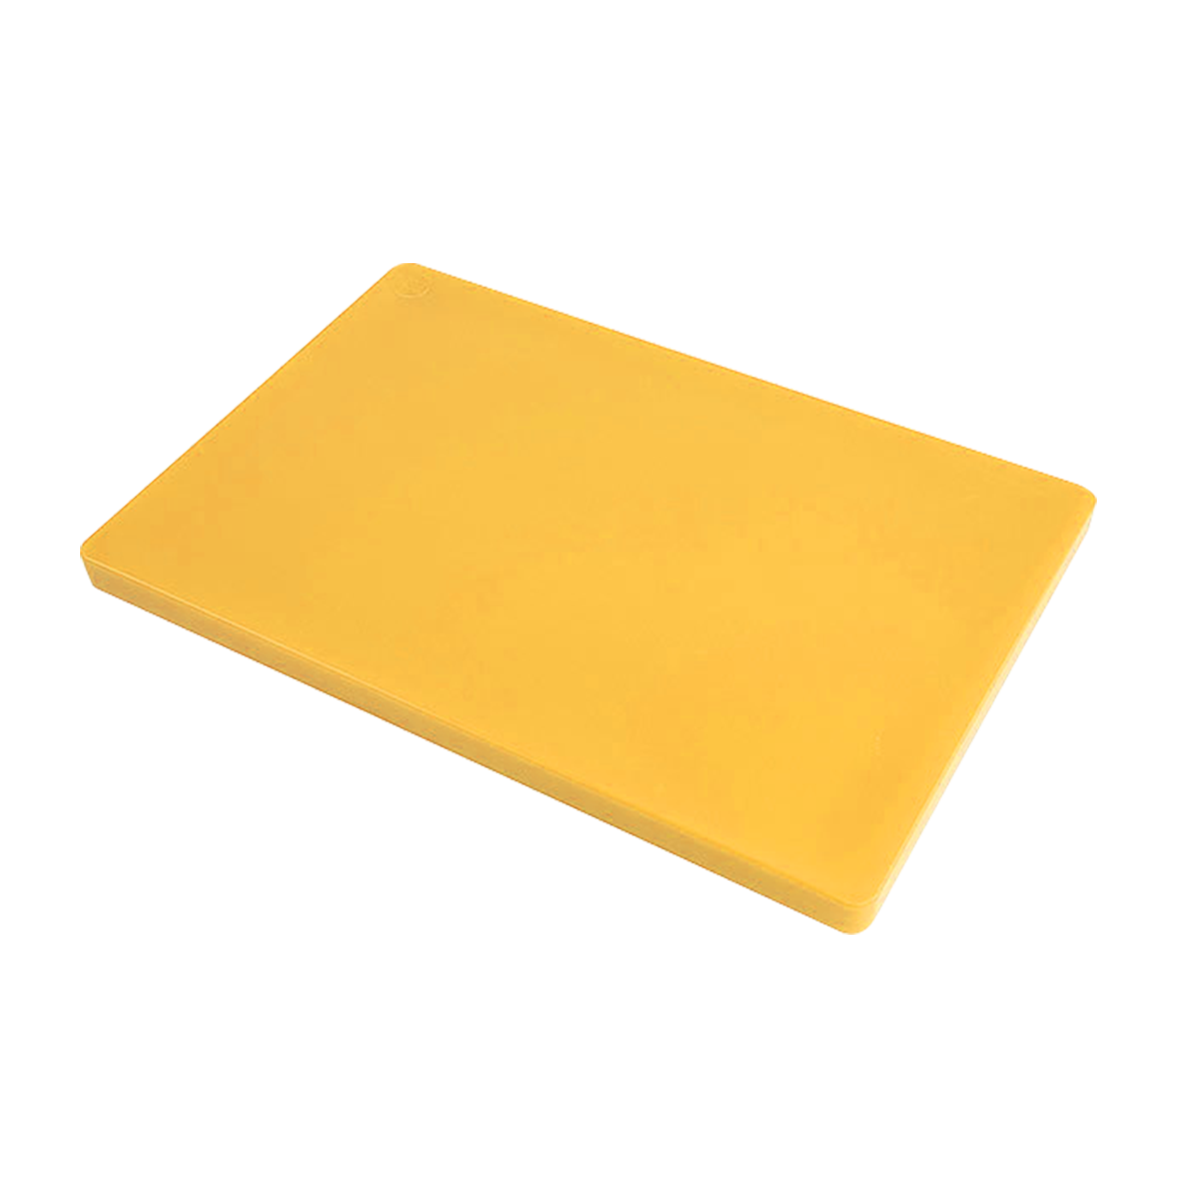 เขียงพลาสติก ทรงสี่เหลี่ยม ขนาด 30 x 50 x 3 ซม. สีเหลือง